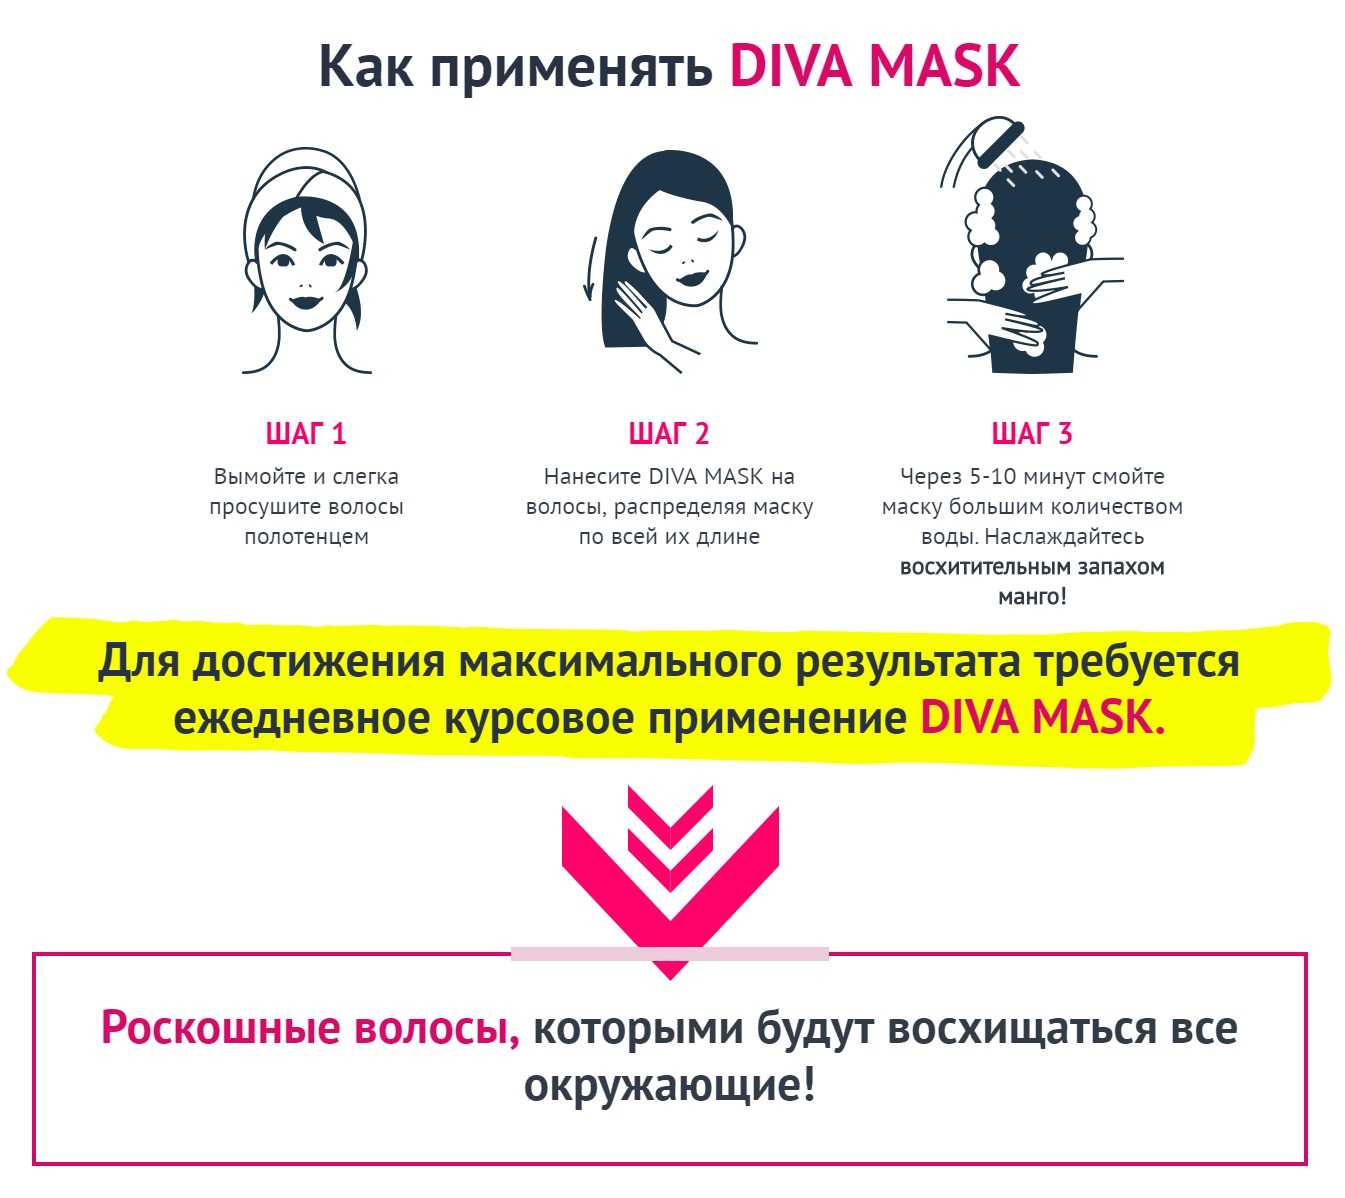 Инструкция по применению маски для волос. Последовательность нанесения маски для волос. Инструкция использования маски для волос. Наносить маску на волосы. Как использовать маску для волос.